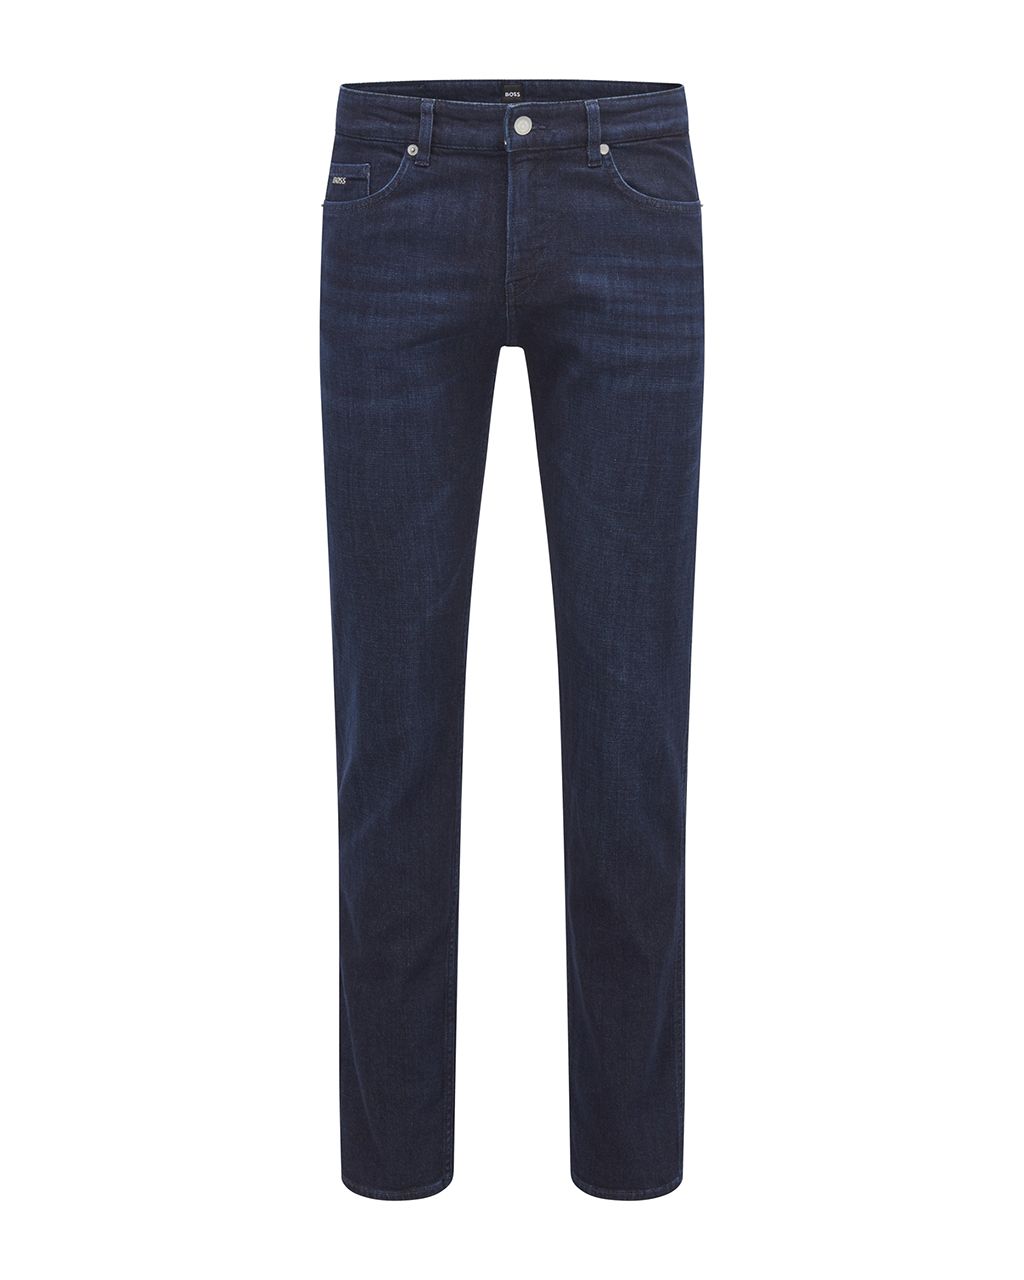 Hugo Boss Menswear Delaware Jeans Donker blauw 076337-001-31/34